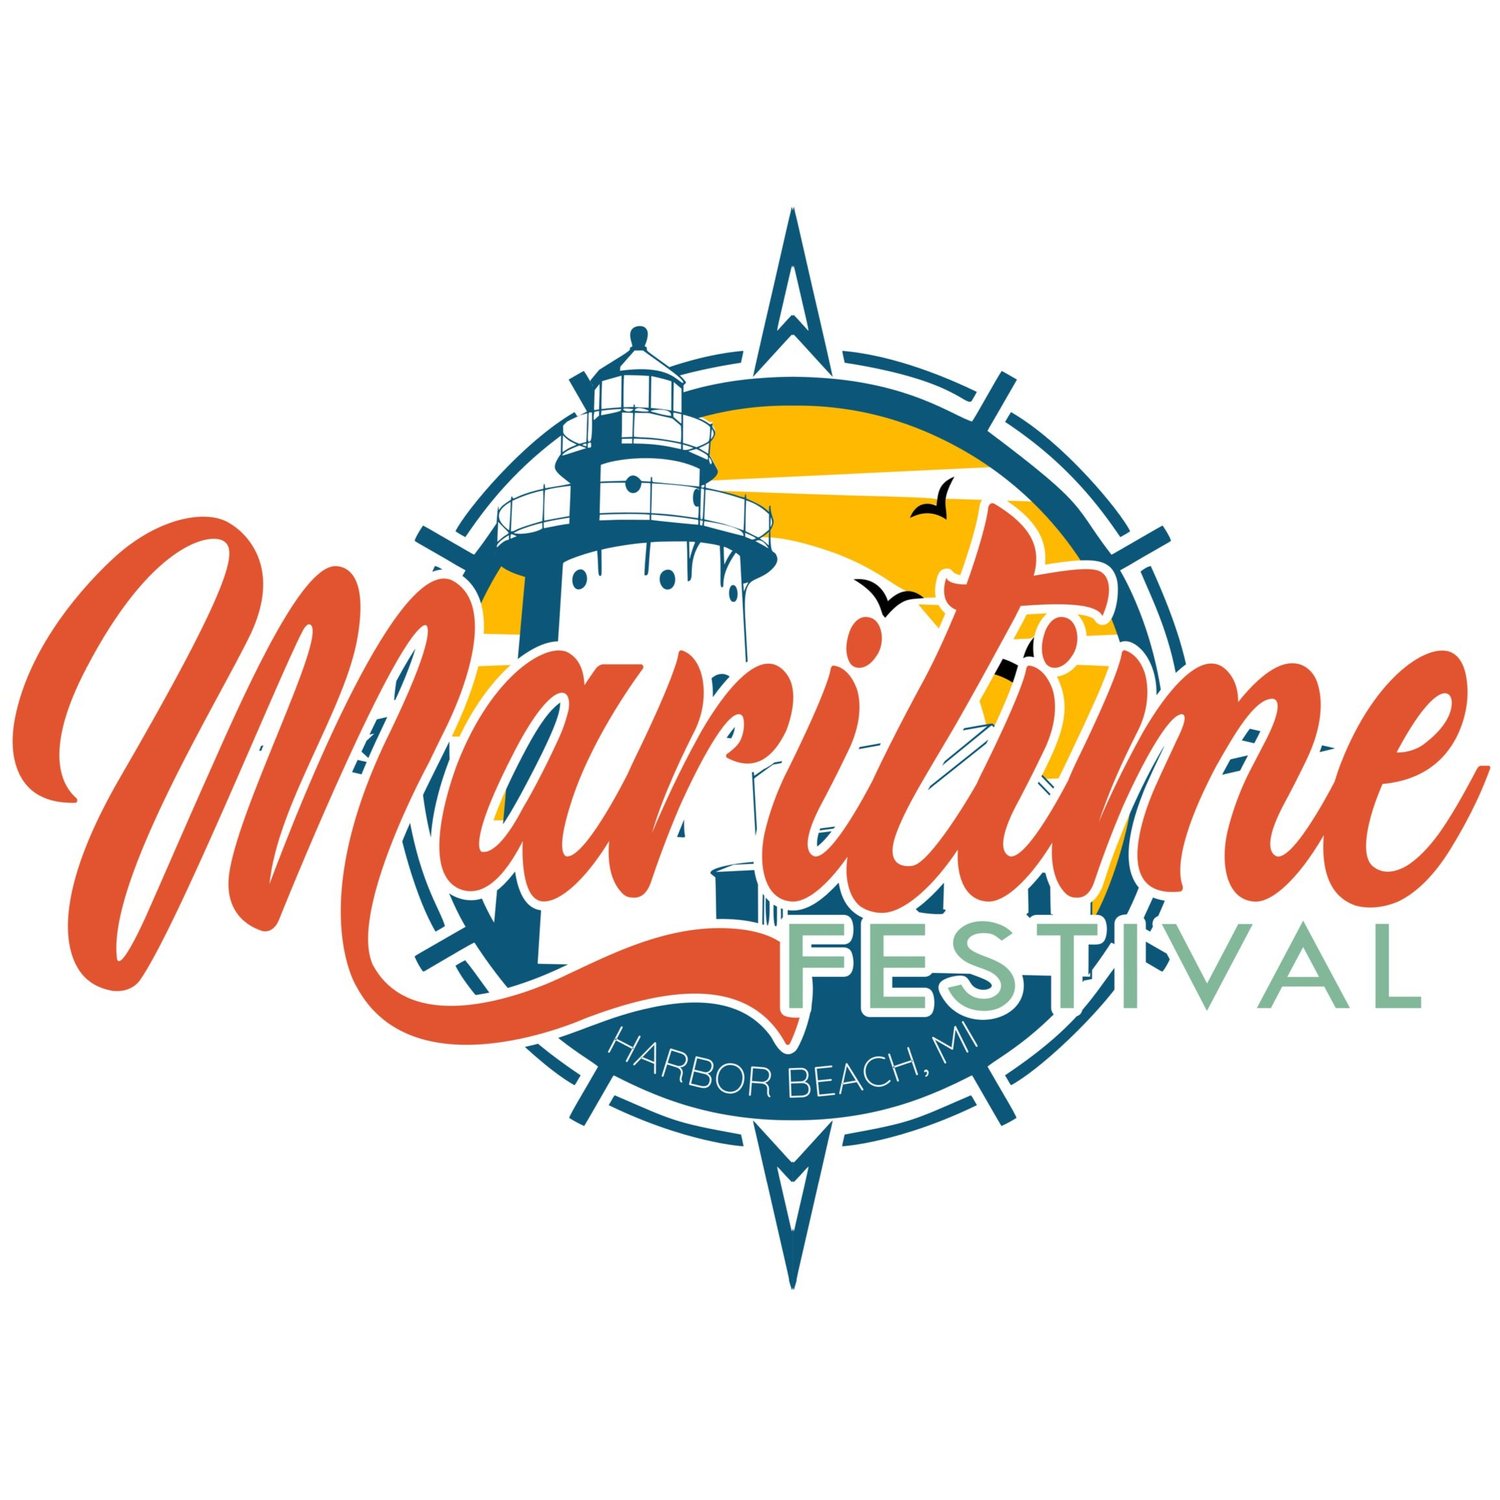 The Harbor Beach Maritime Festival